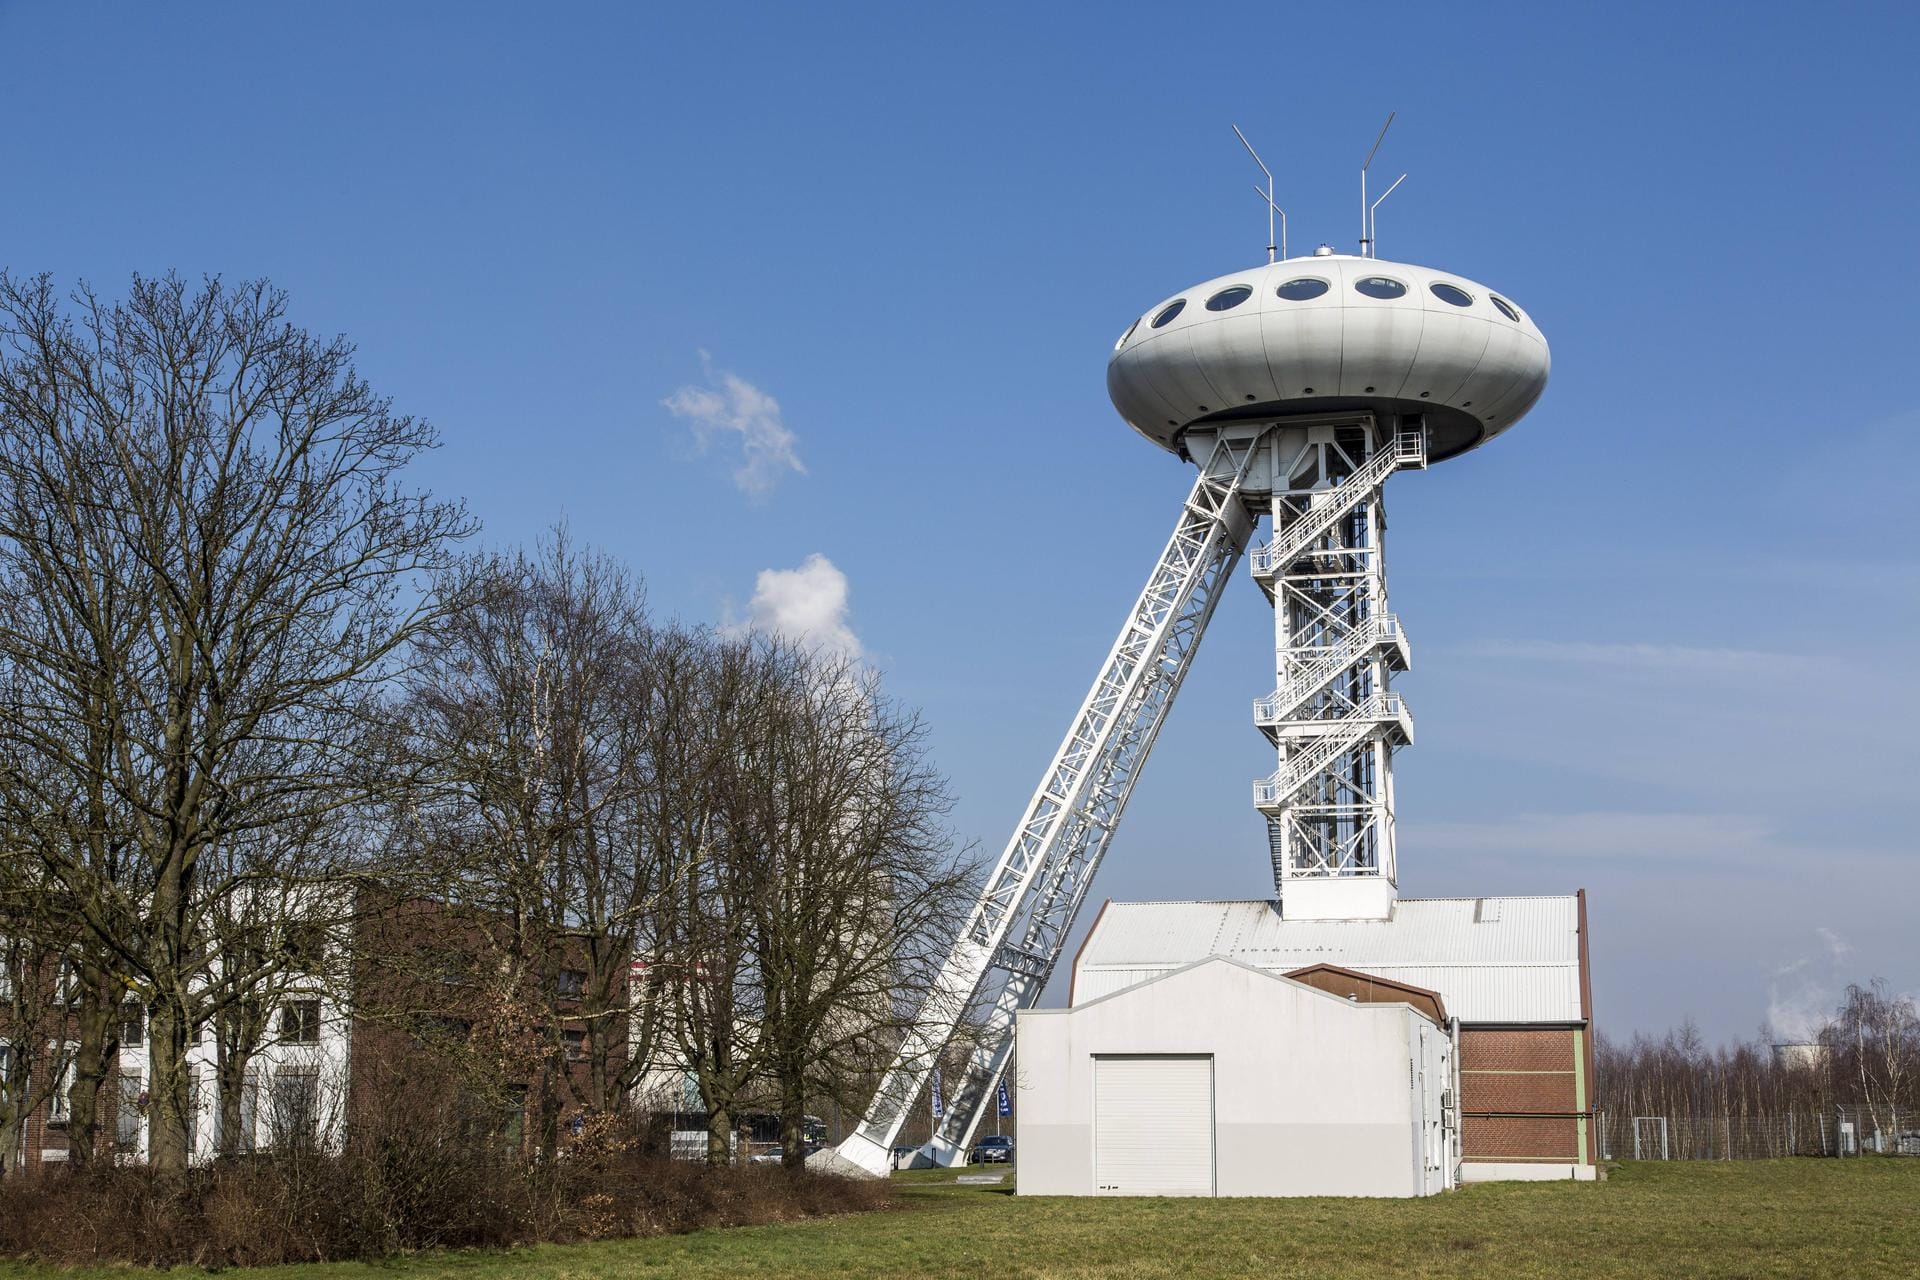 Auch Colani-Ei genannt: Der Lüntec-Tower in Achenbach wurde von Luigi Colani entworfen. Durch den futuristischen Förderturm soll der Wandel im Ruhrgebiet symbolisiert werden. Die Arbeiten daran wurden 1995 beendet.